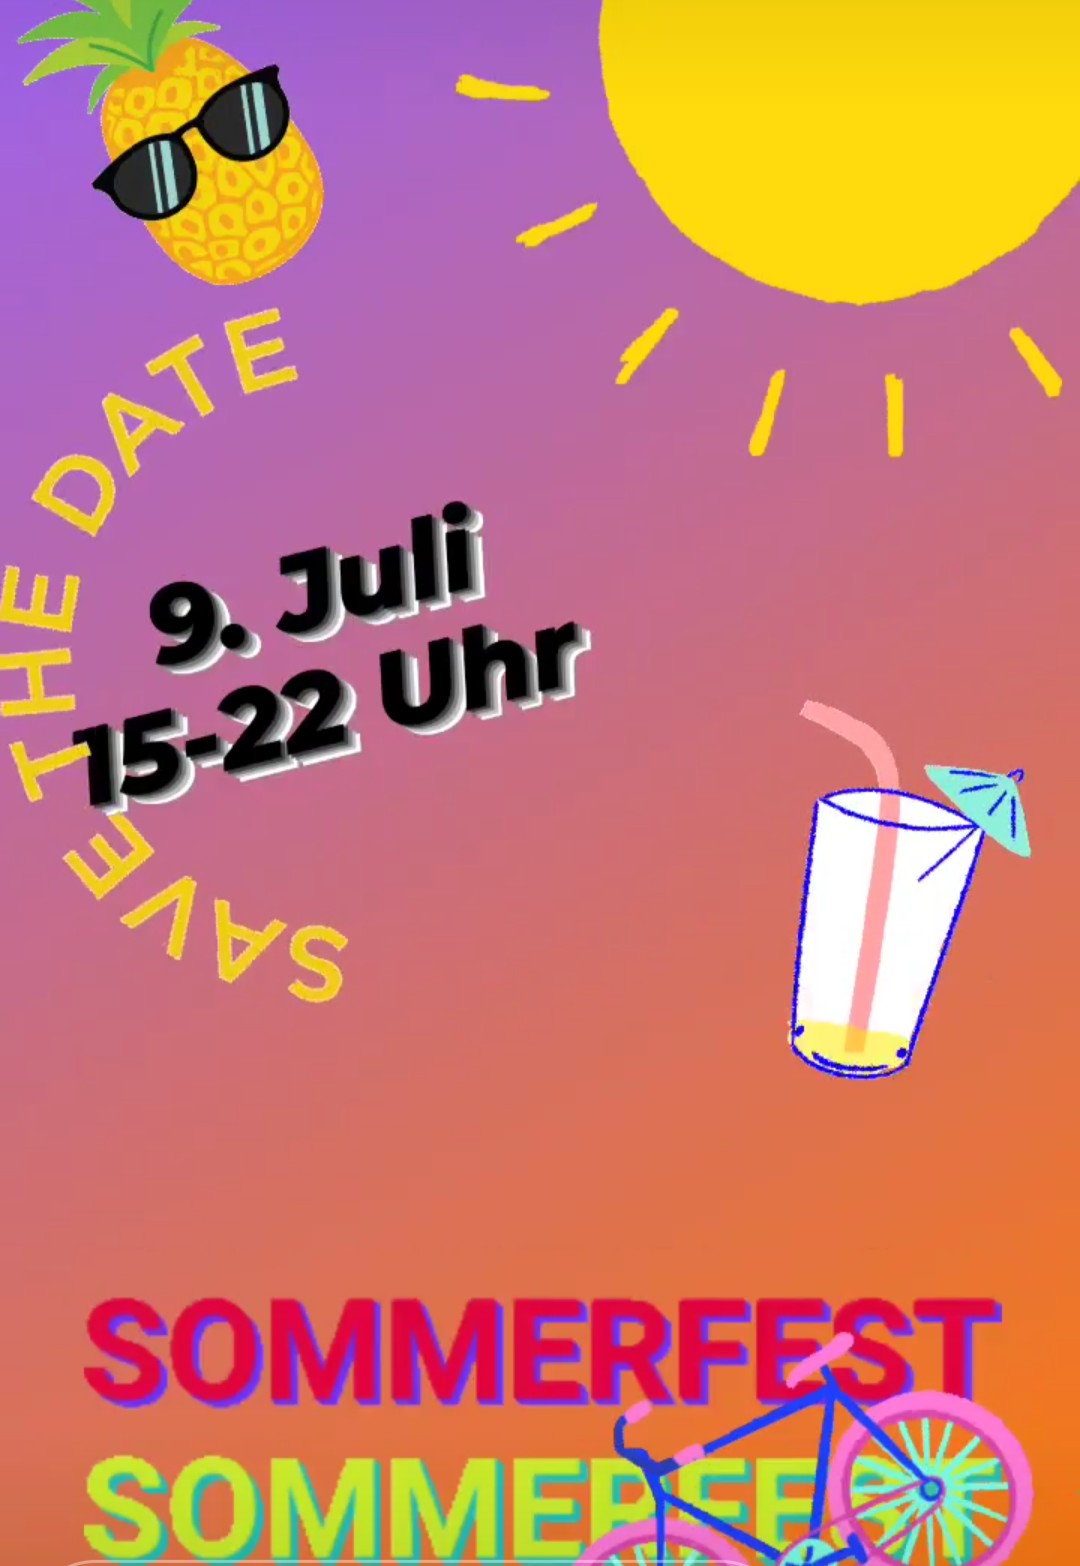 – 9. Juli / 15-22 Uhr – Save the date! Dieses Jahr findet wieder ein Basement Bikes Sommerfest statt…